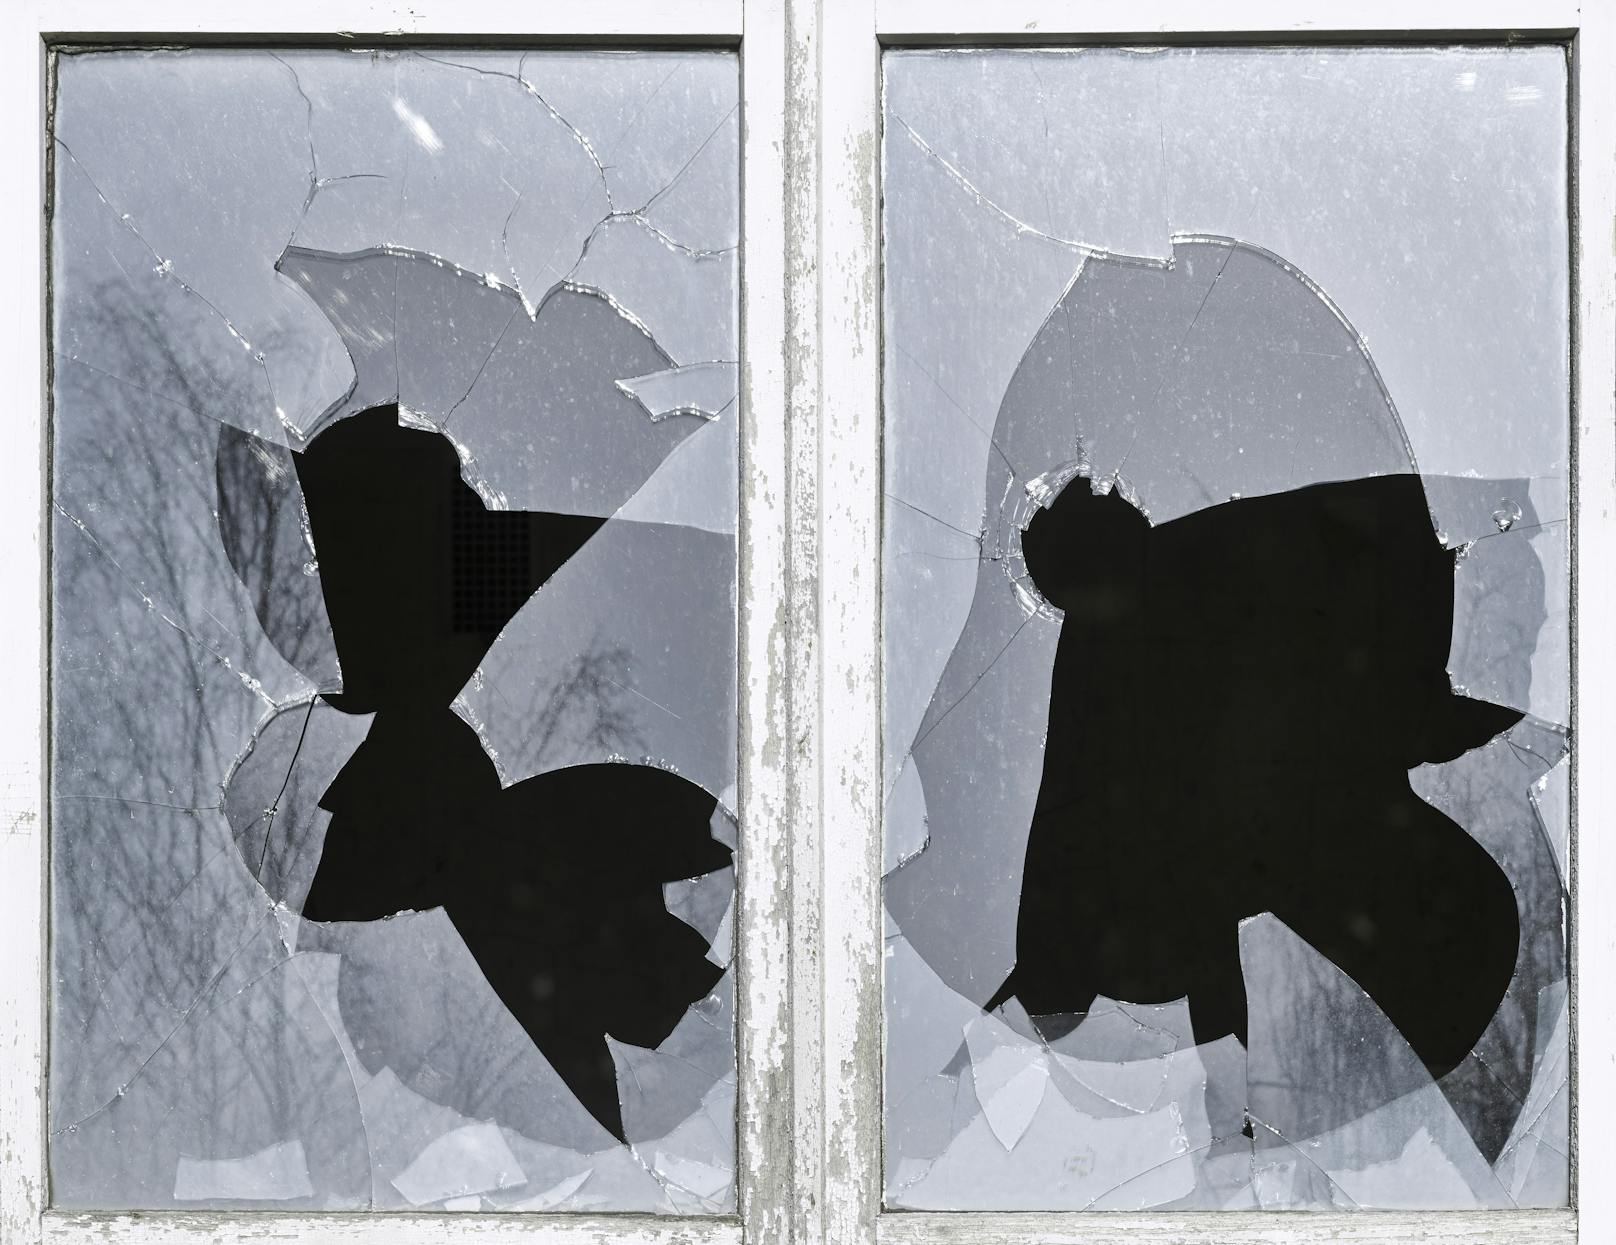 Die drei Schüler schlugen die Fenster eines Hauses ein. (Symbolbild)